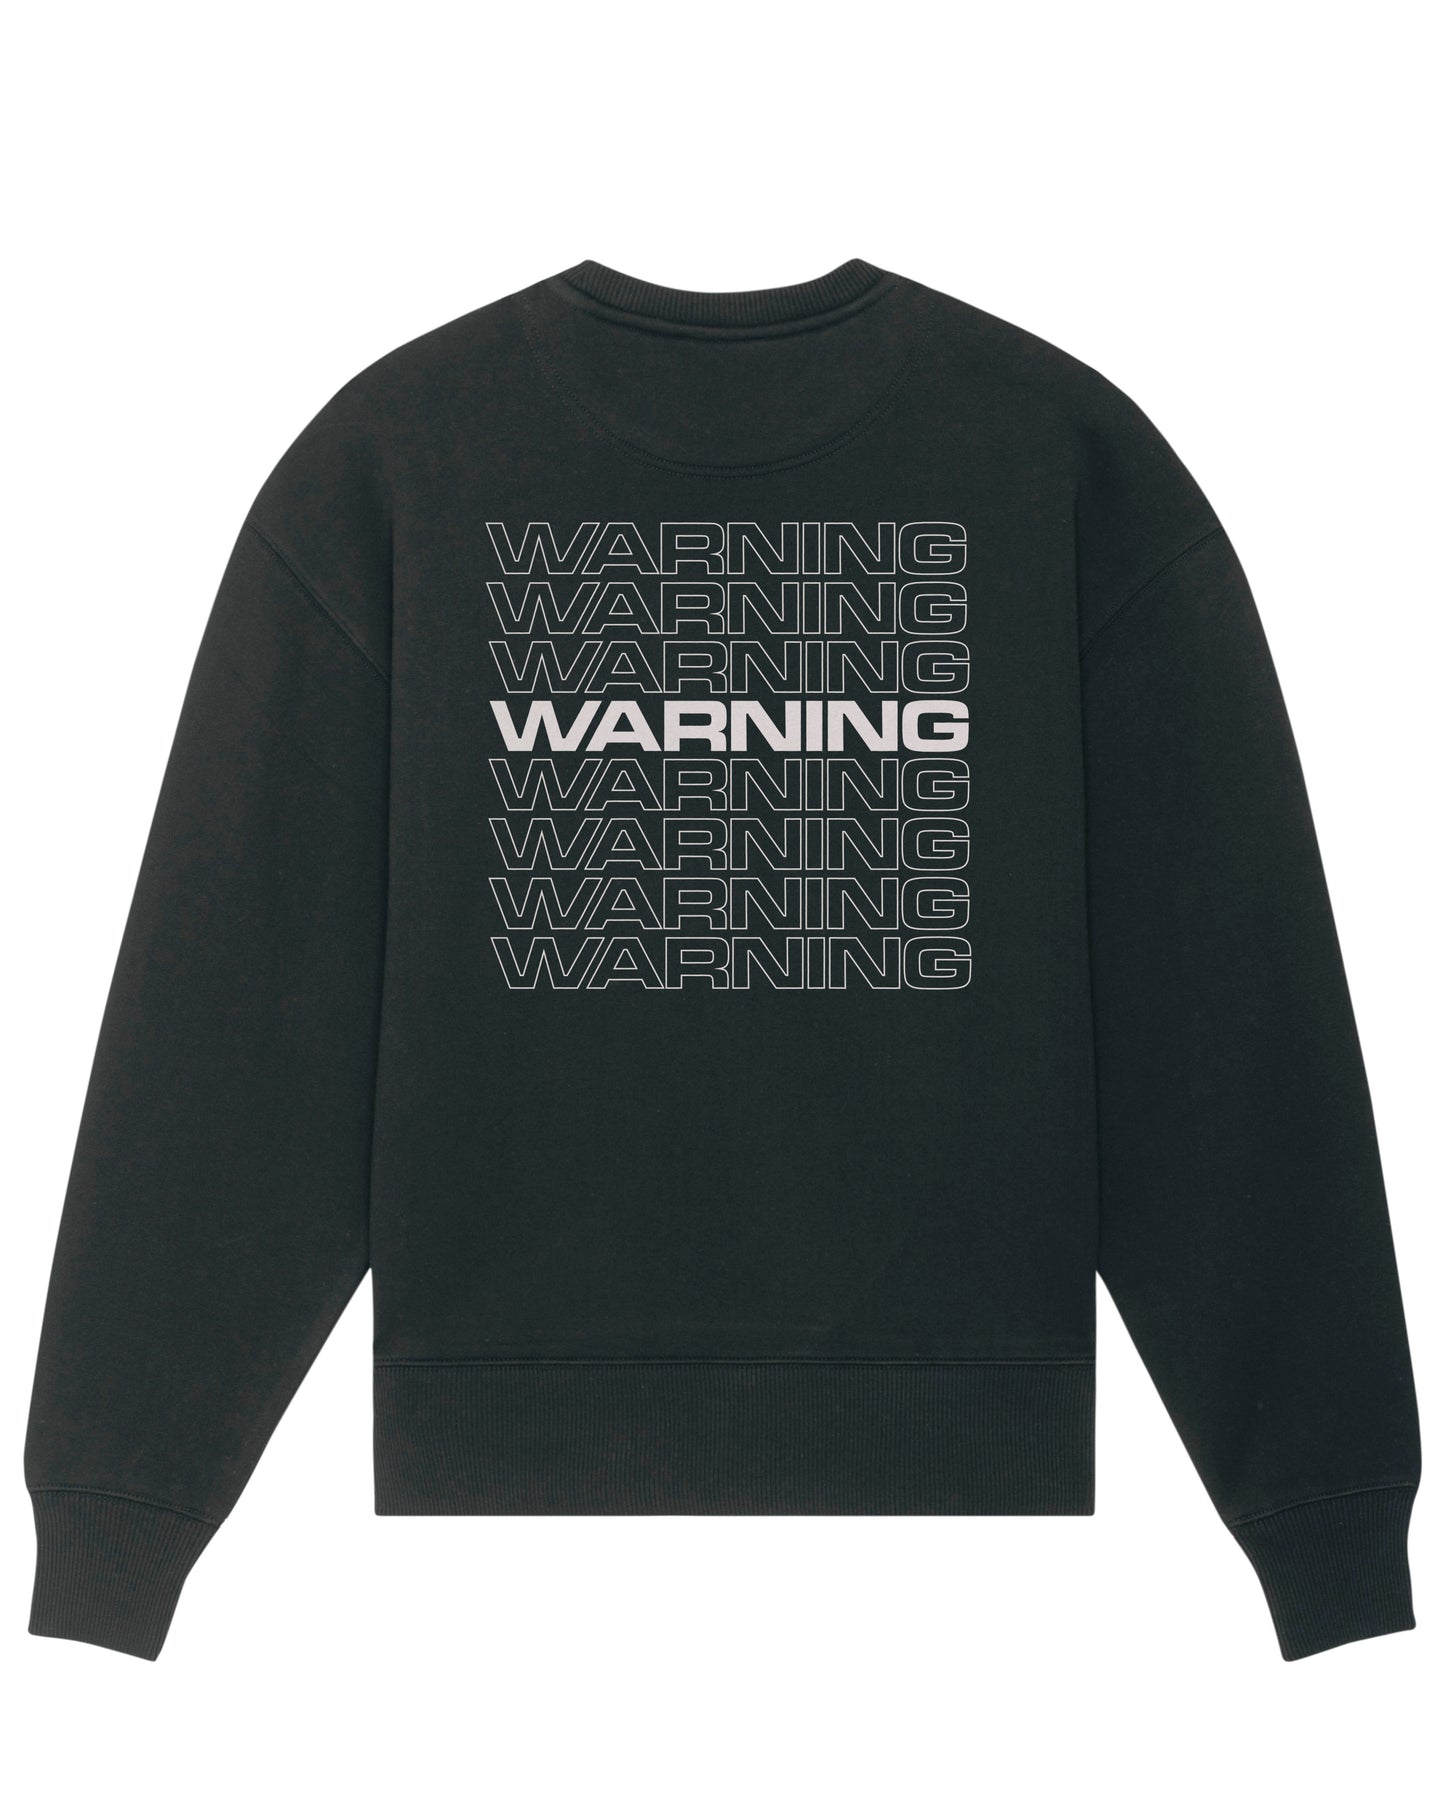 Warning Logo - White on Black - Unisex Sweatshirt